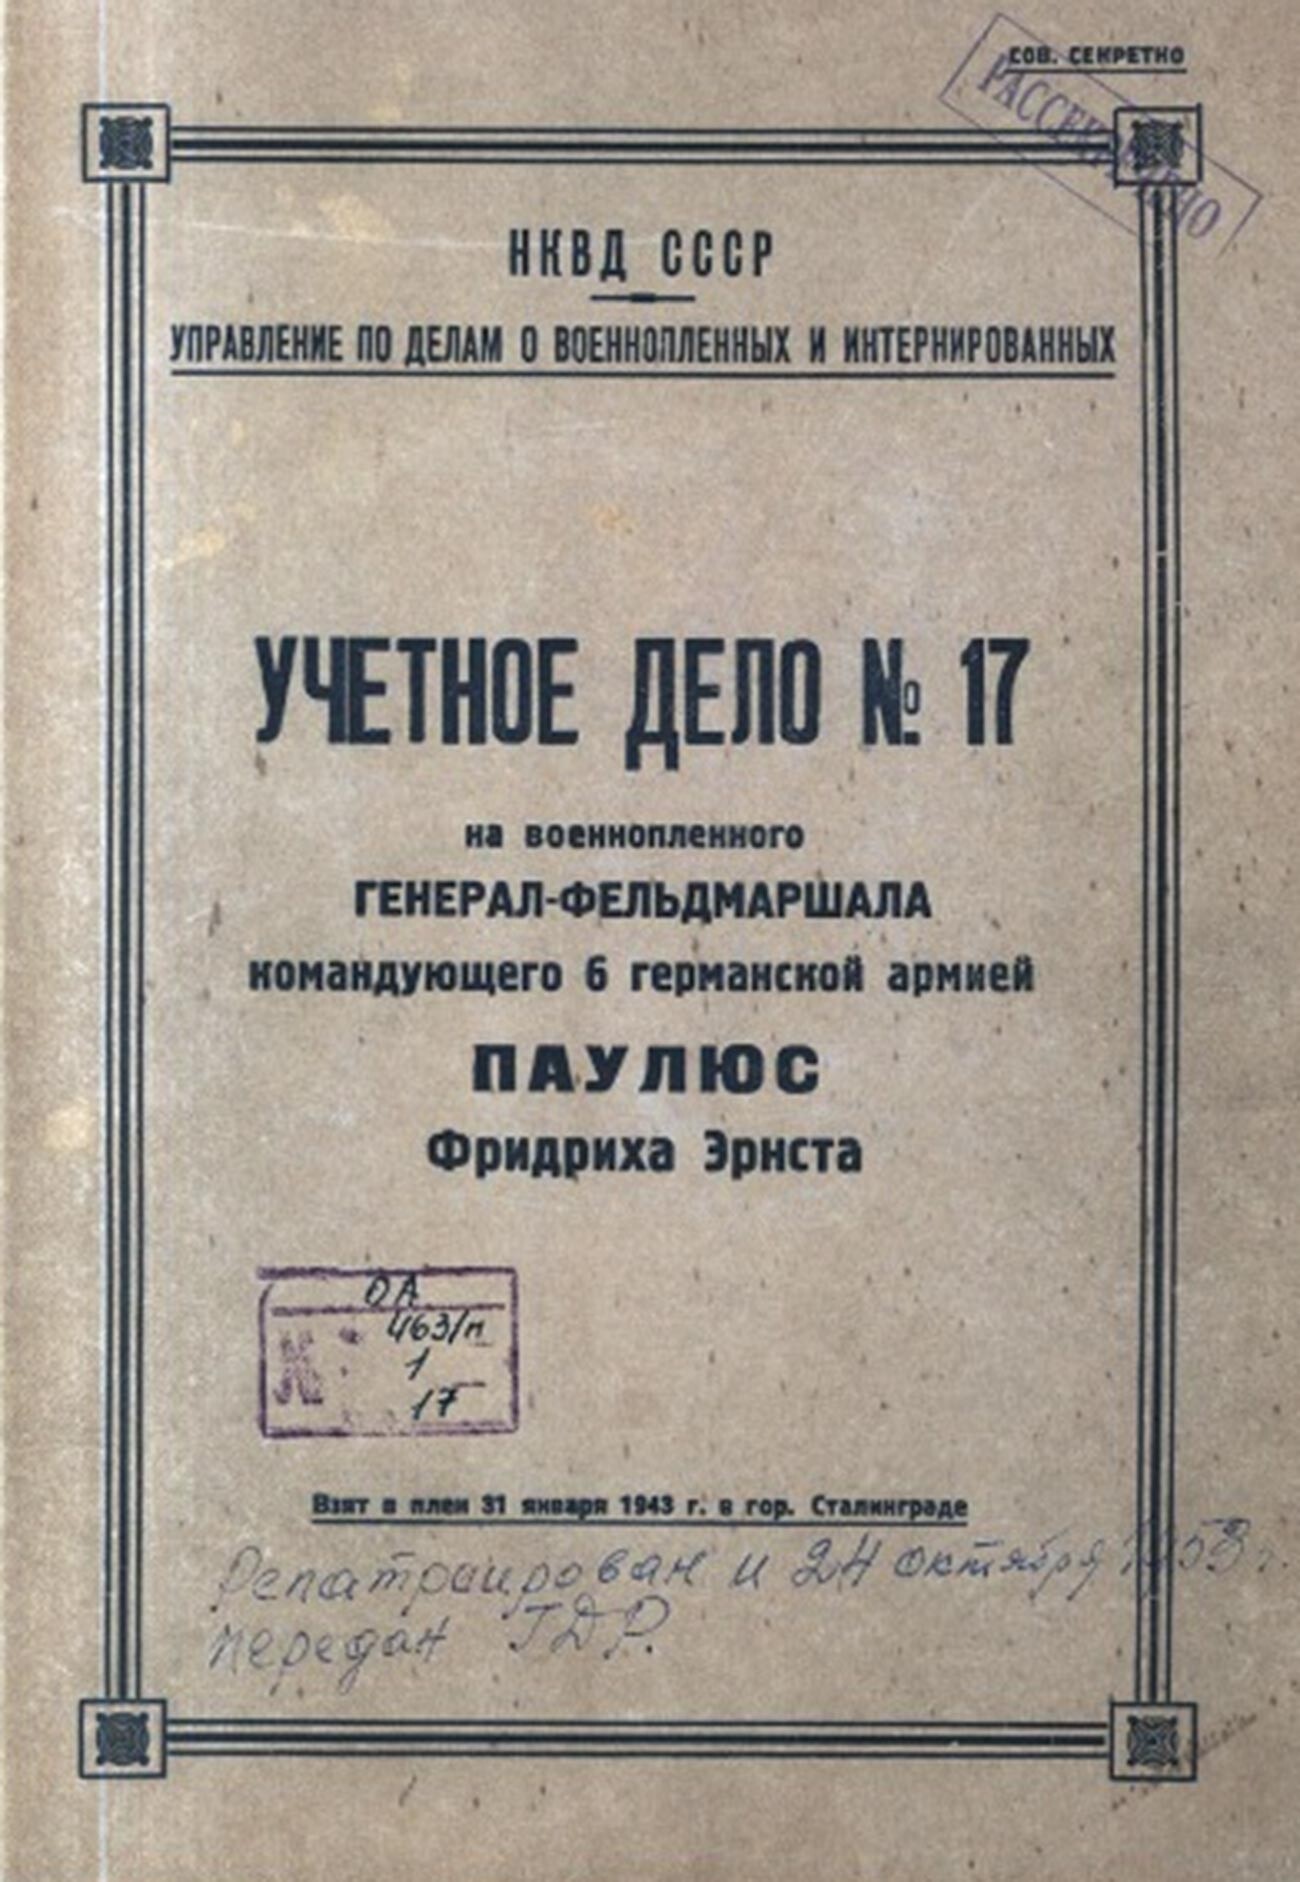 La scheda di Paulus redatta dall'NKVD